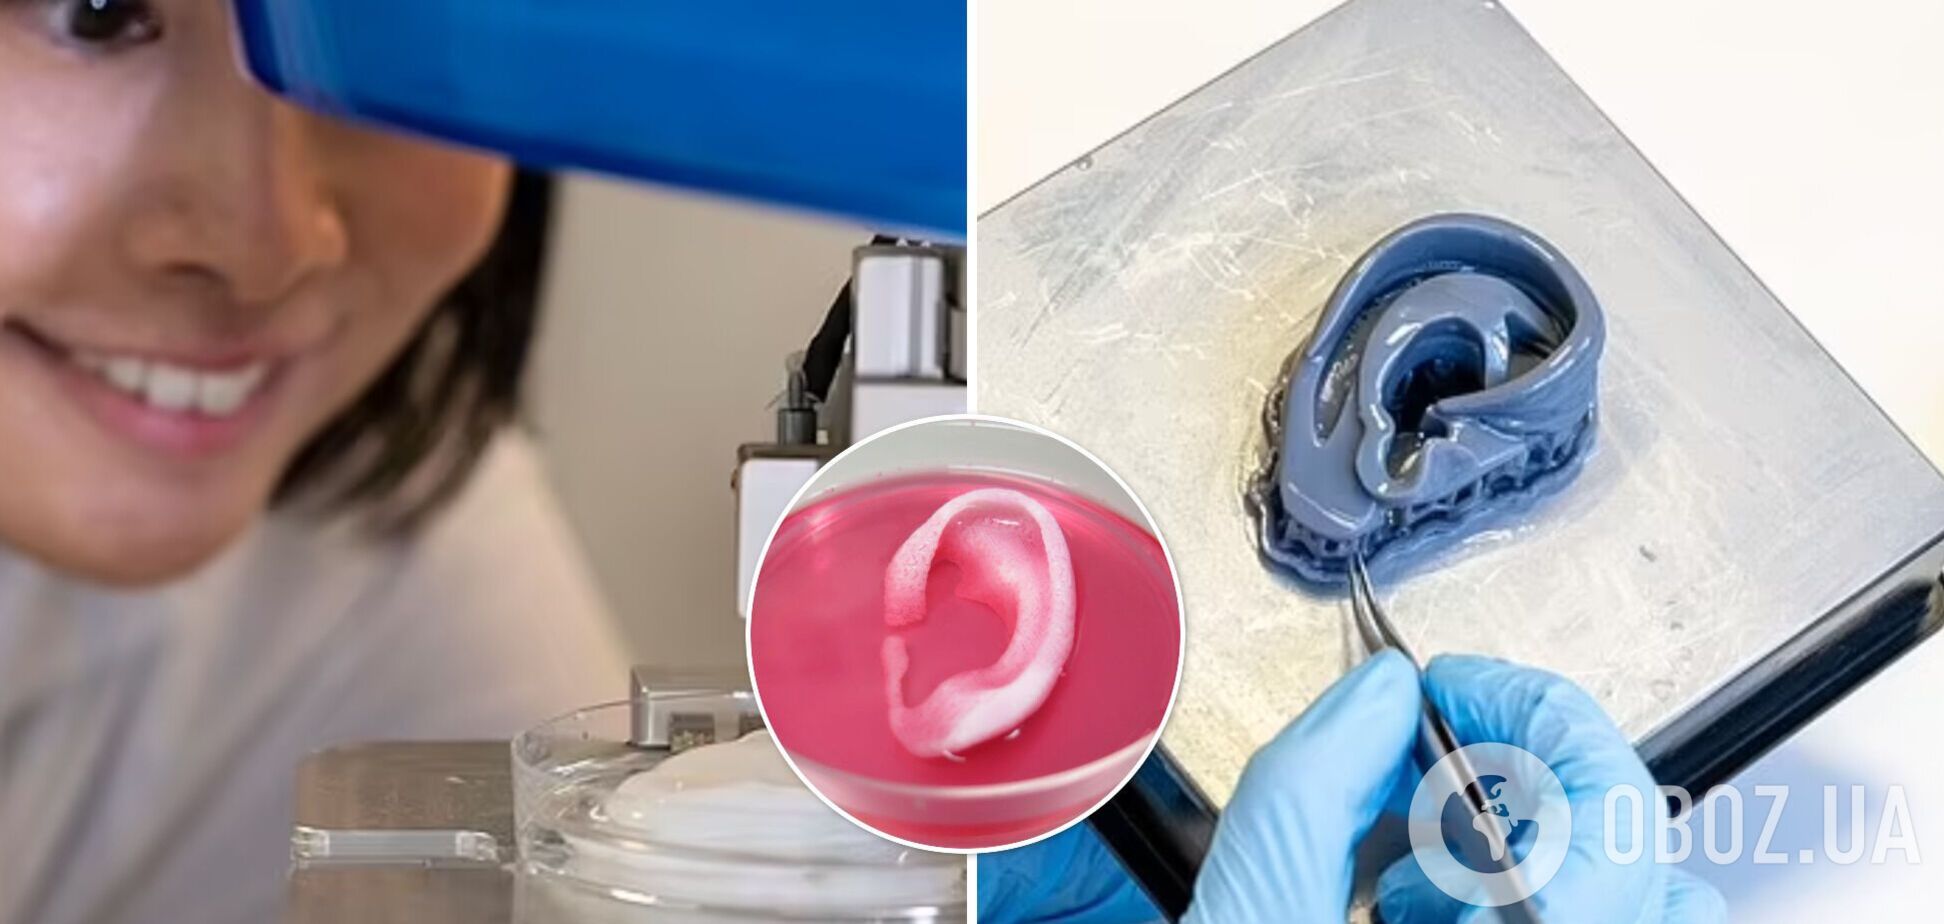 Ученые напечатали на 3-D принтере человеческое ухо: спасет пострадавших в пожарах и рожденных с деформациями. Фото